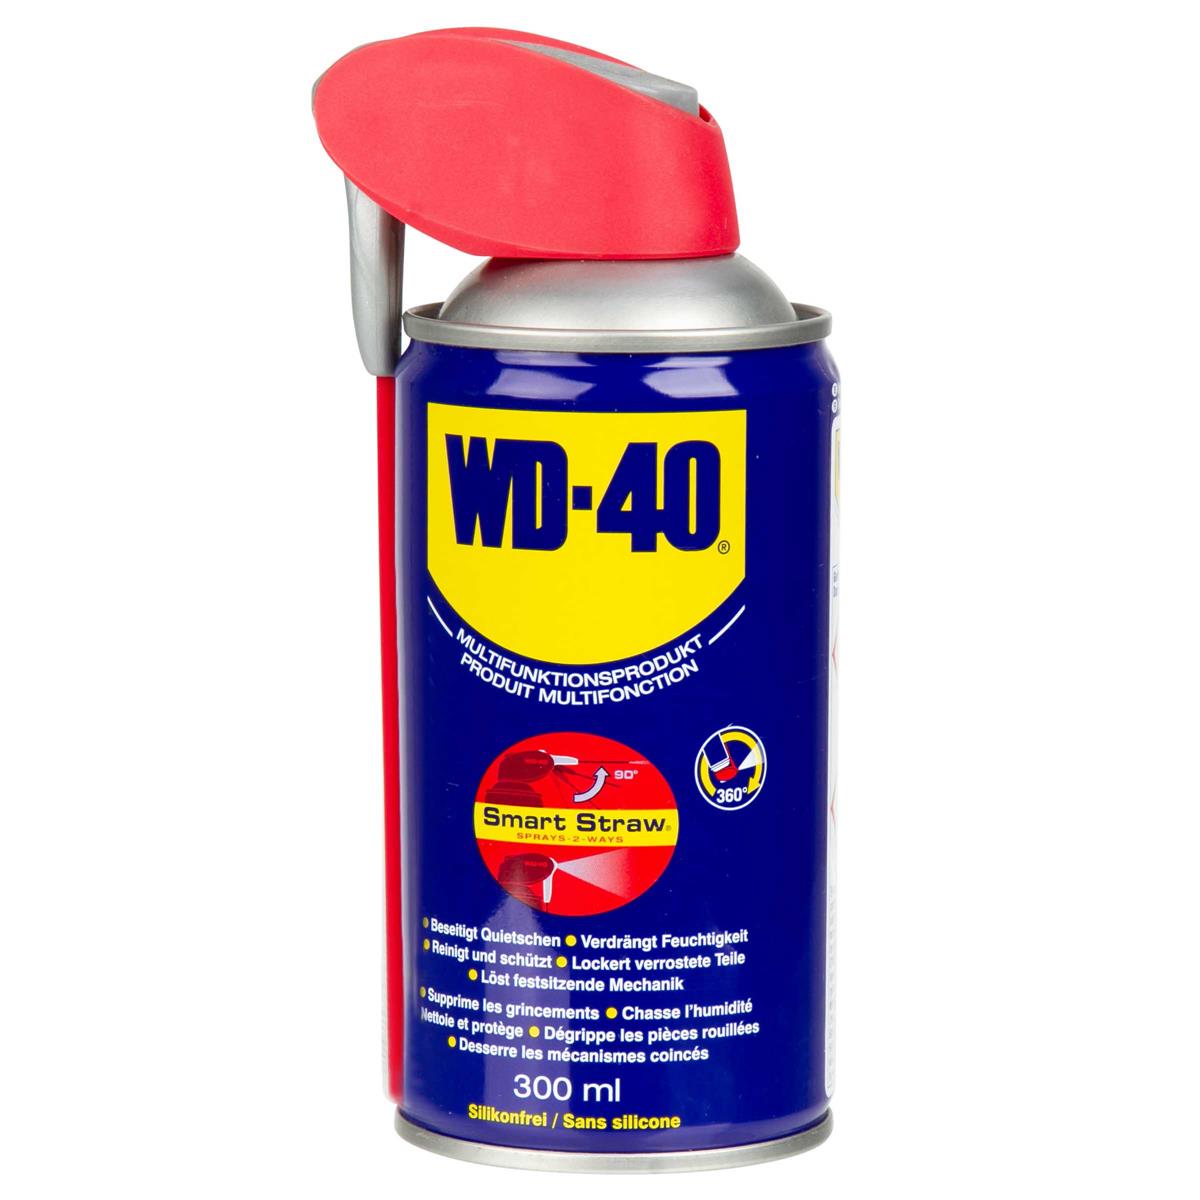 WD-40 Multifunktionsöl Smart Straw 300 ml